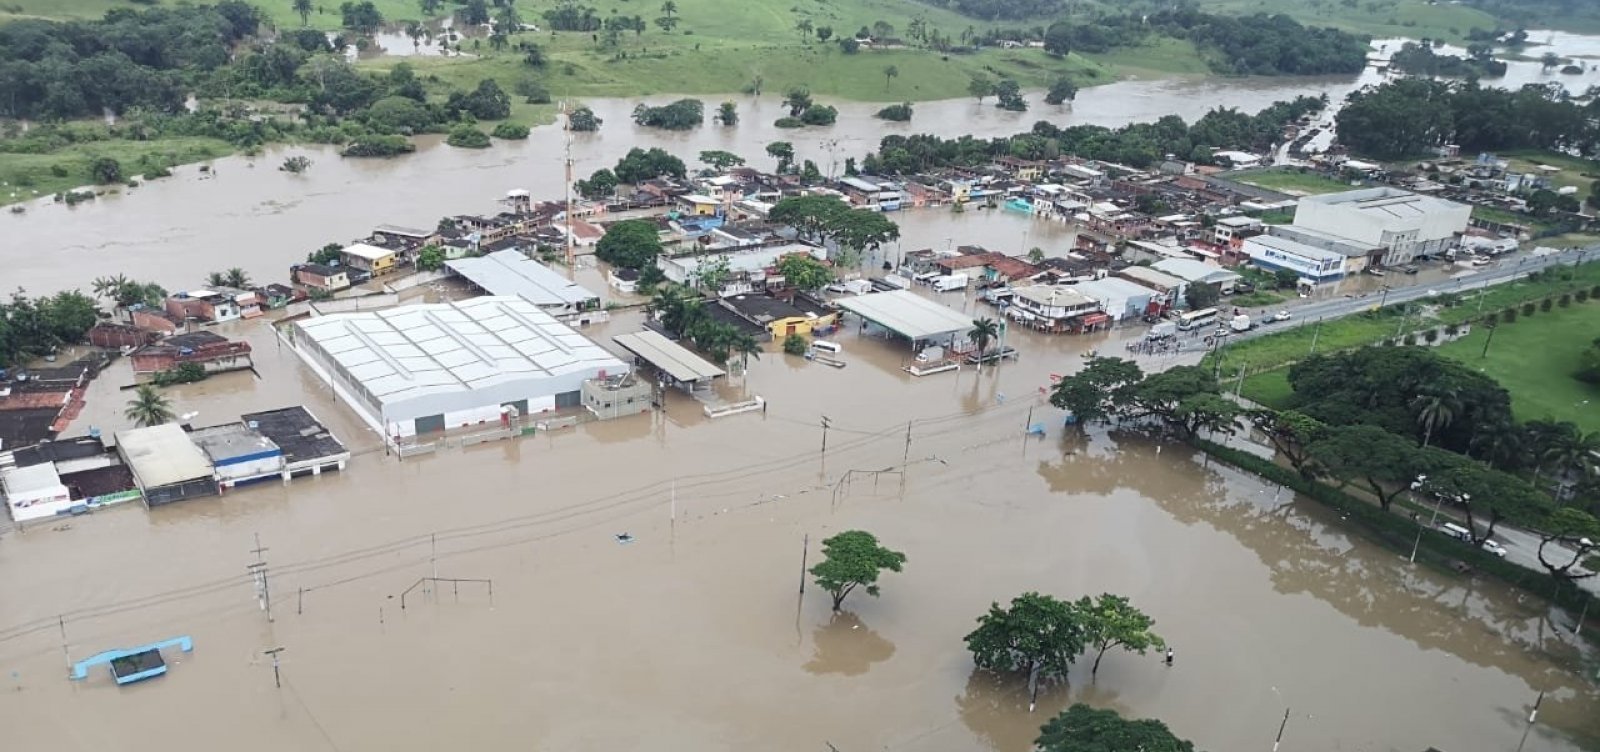 Israel doa 3 máquinas purificadoras de água às cidades atingidas por enchentes na Bahia